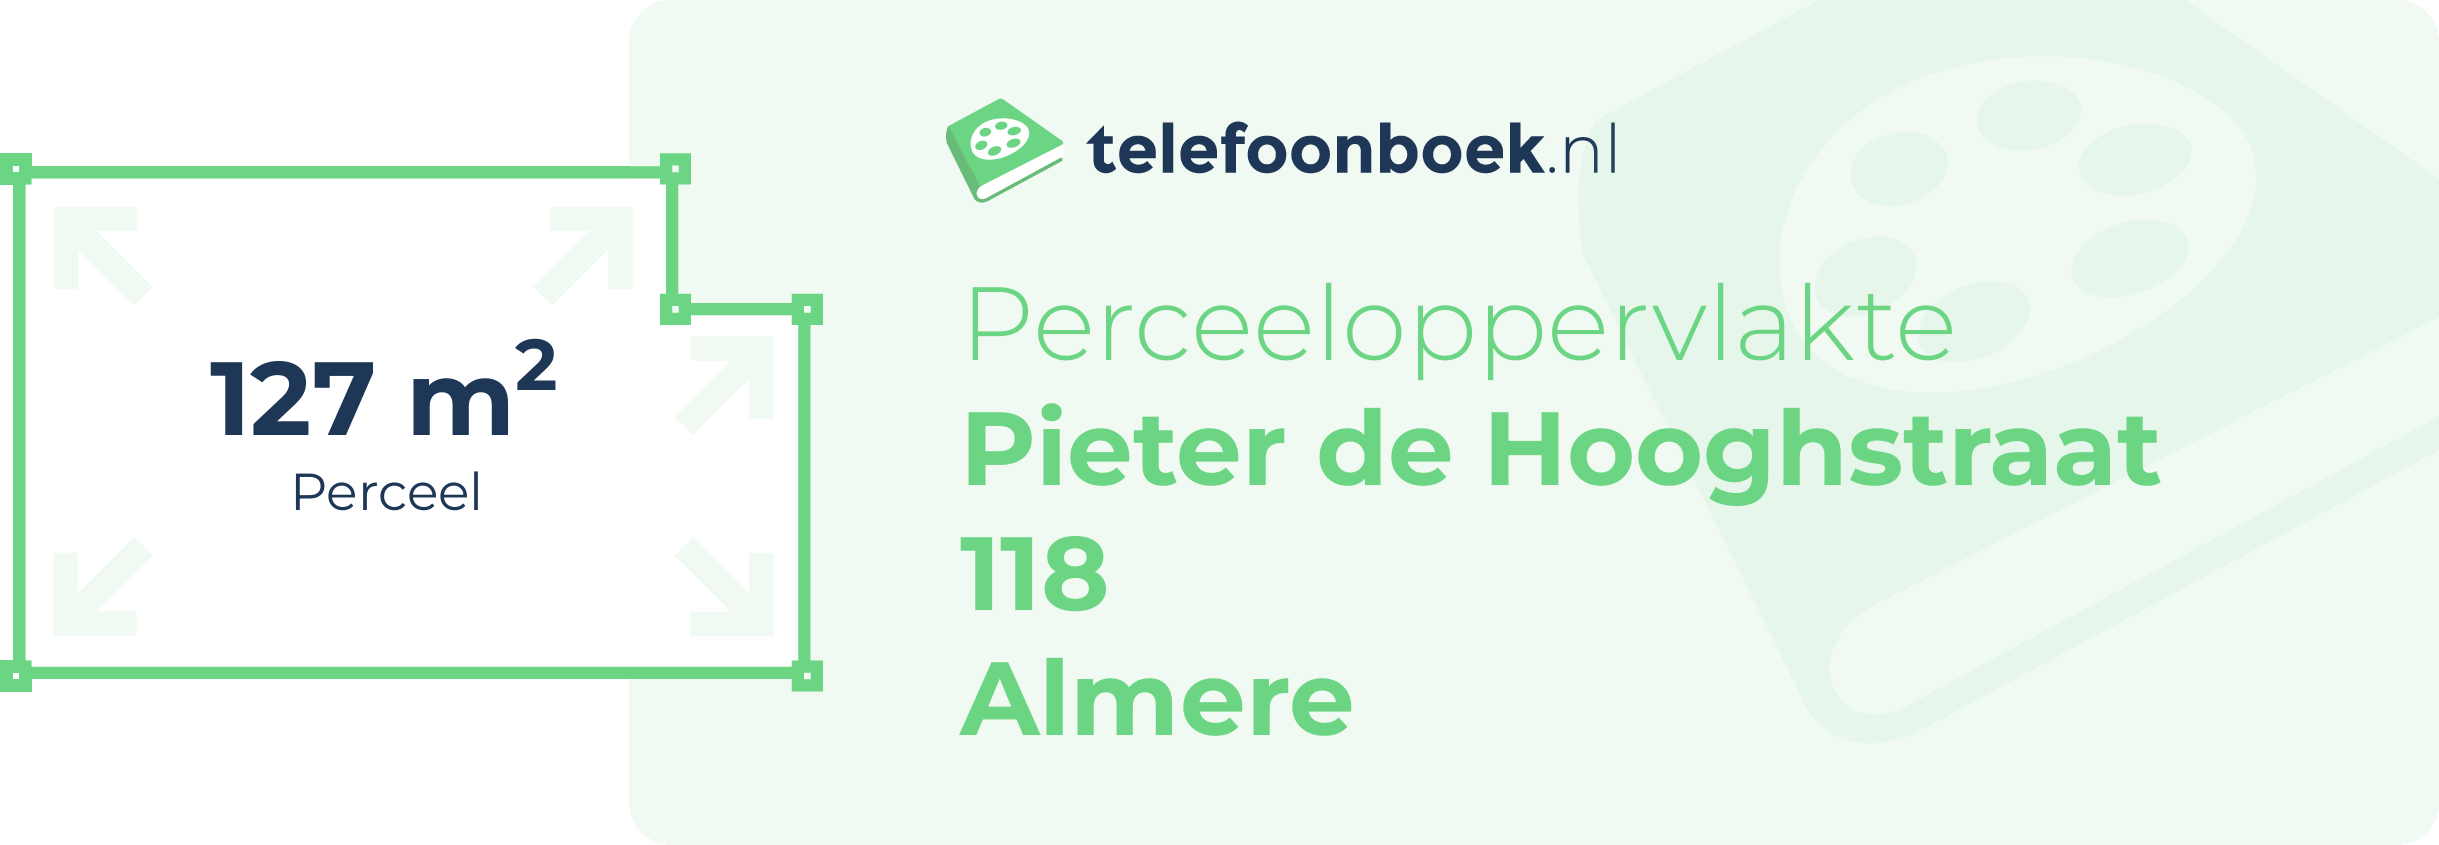 Perceeloppervlakte Pieter De Hooghstraat 118 Almere